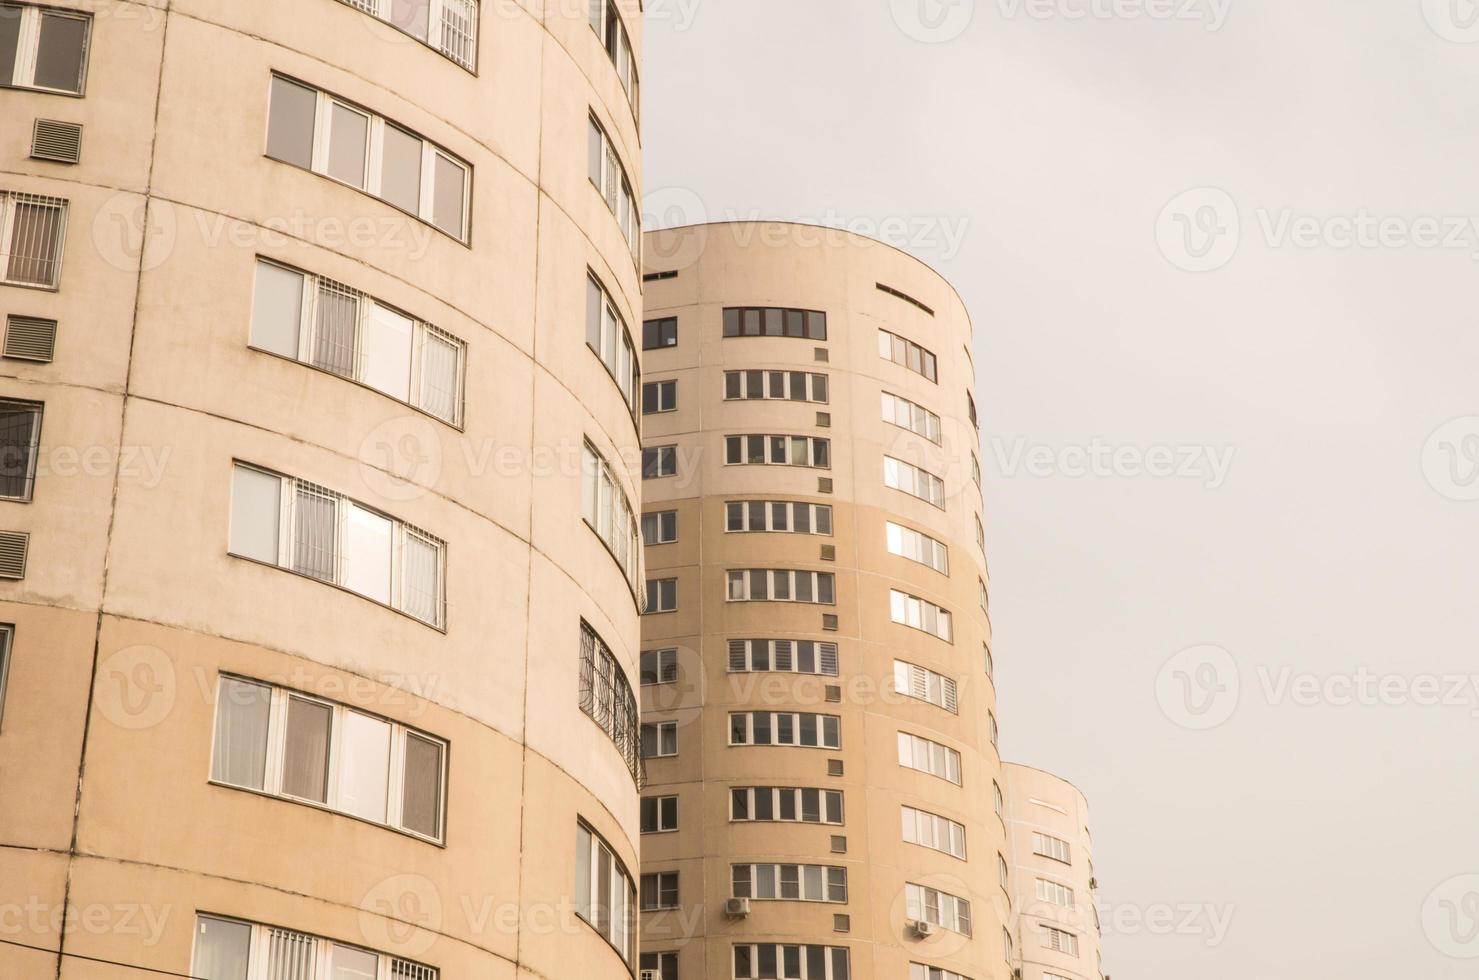 complejo residencial de varios pisos contra el cielo. arquitectura urbana foto